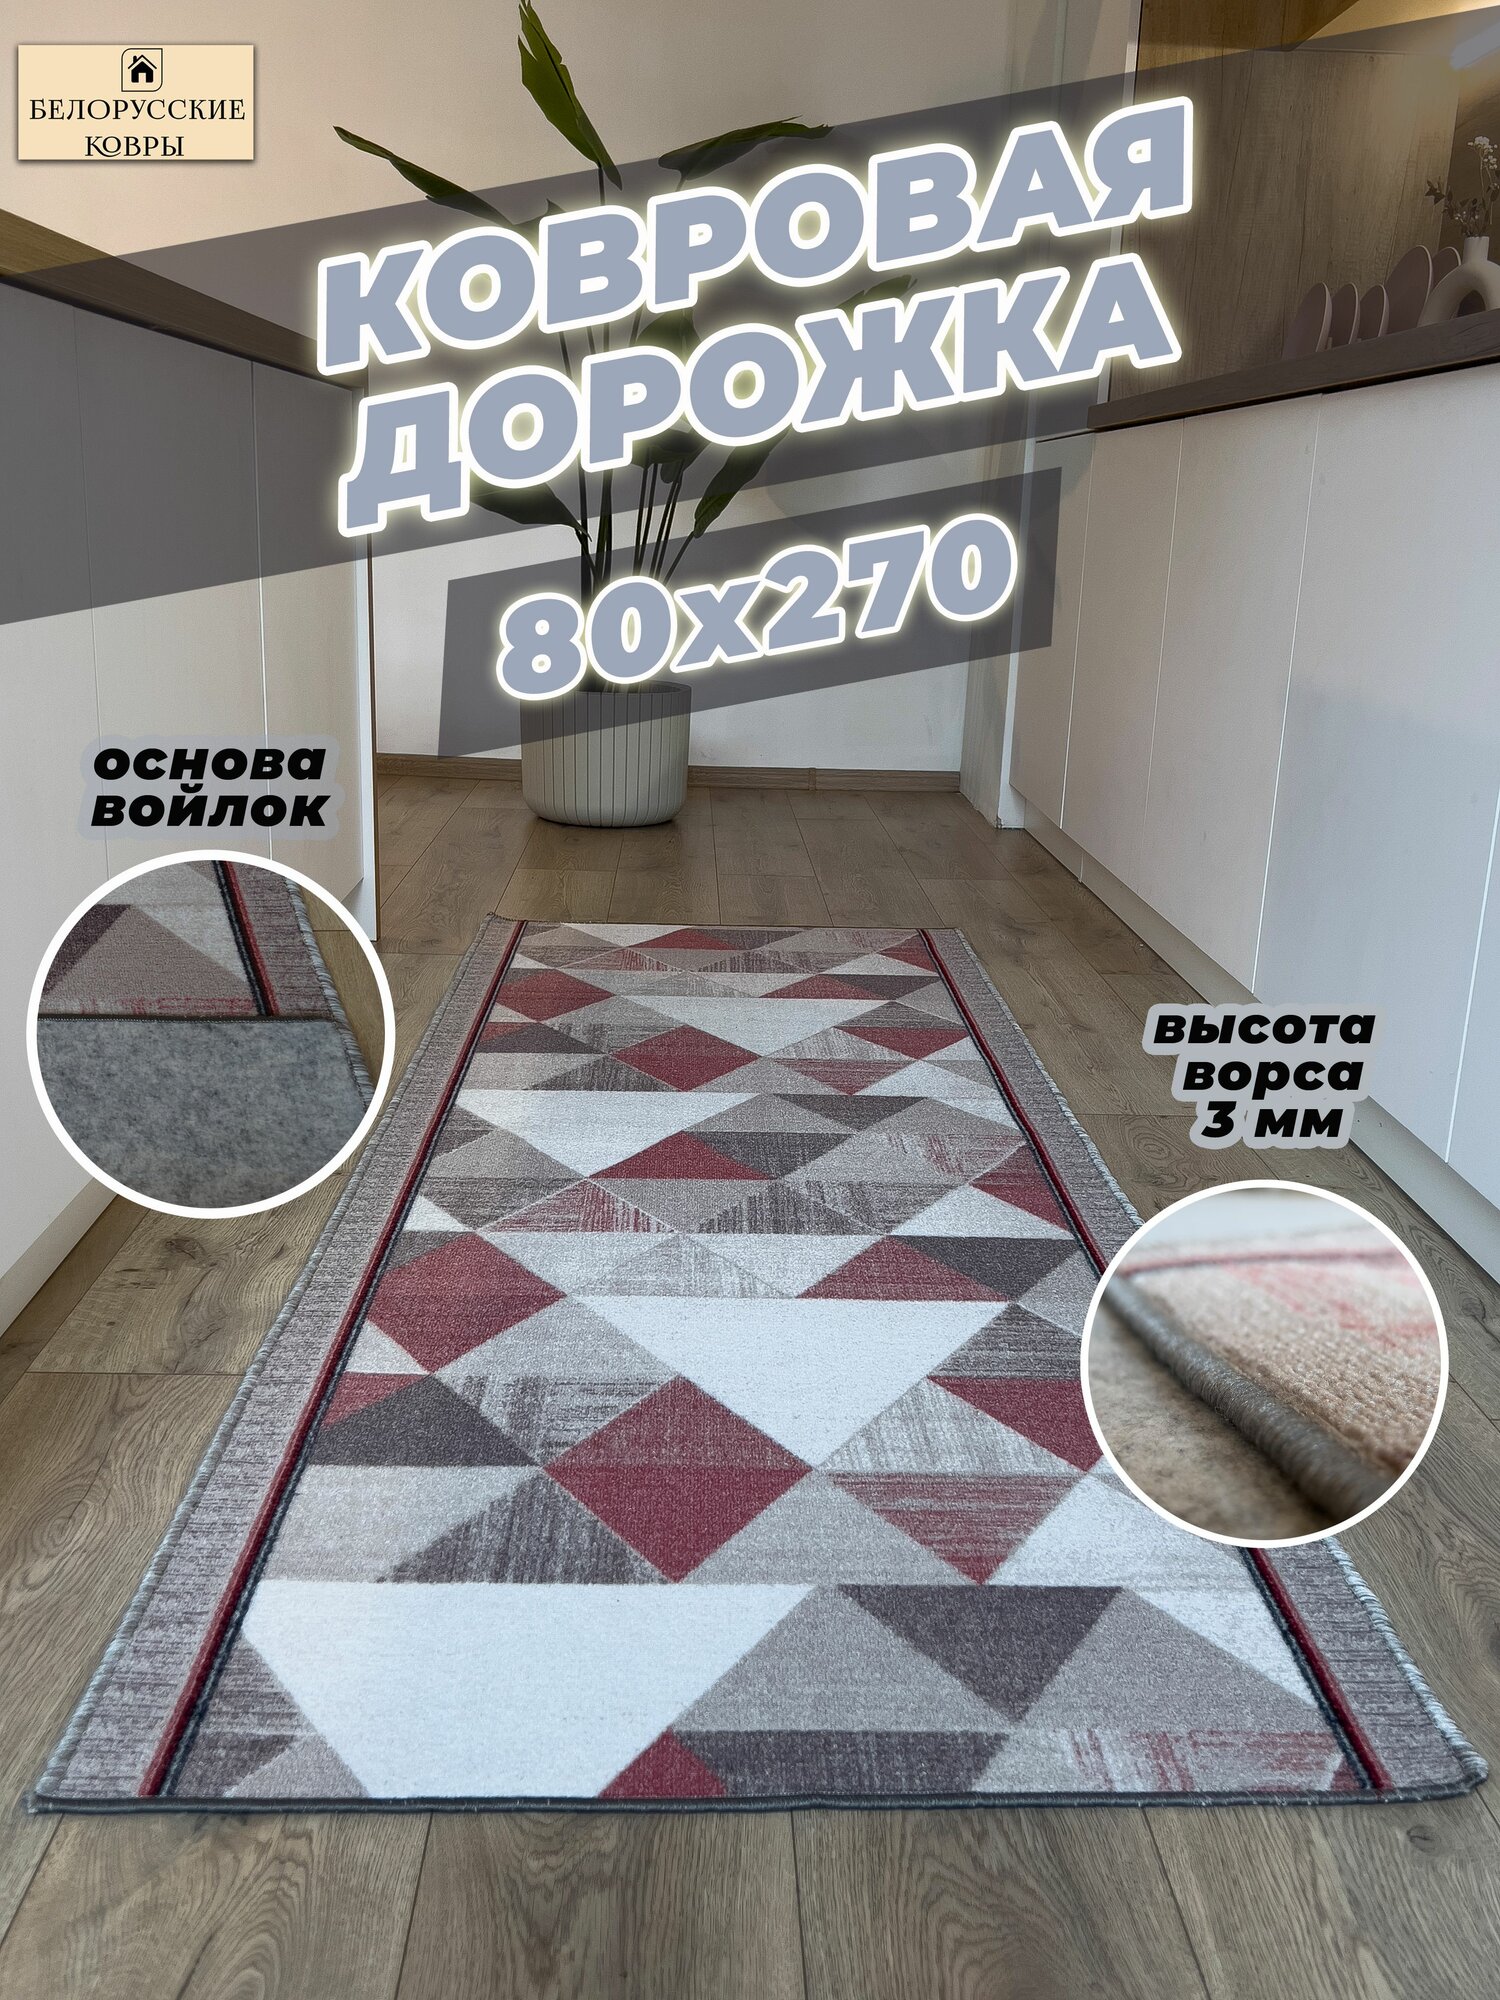 Белорусские ковры, ковровая дорожка 80х270см./0,8х2,7м.